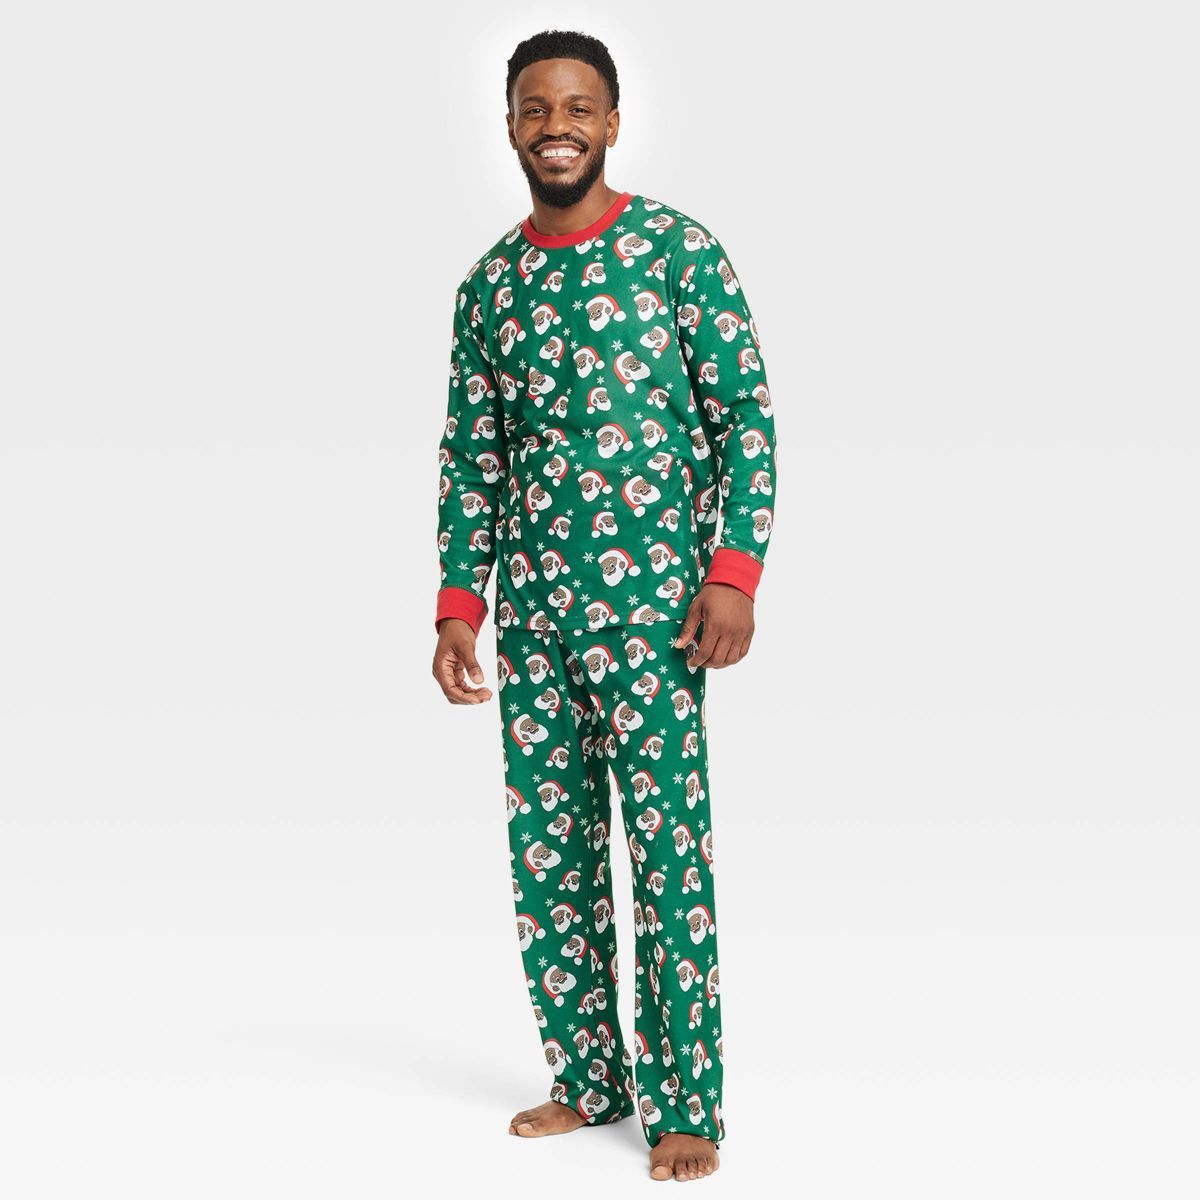 Greentop Gifts Men's Santa Print Matching Family Pajama Set - Green | Target